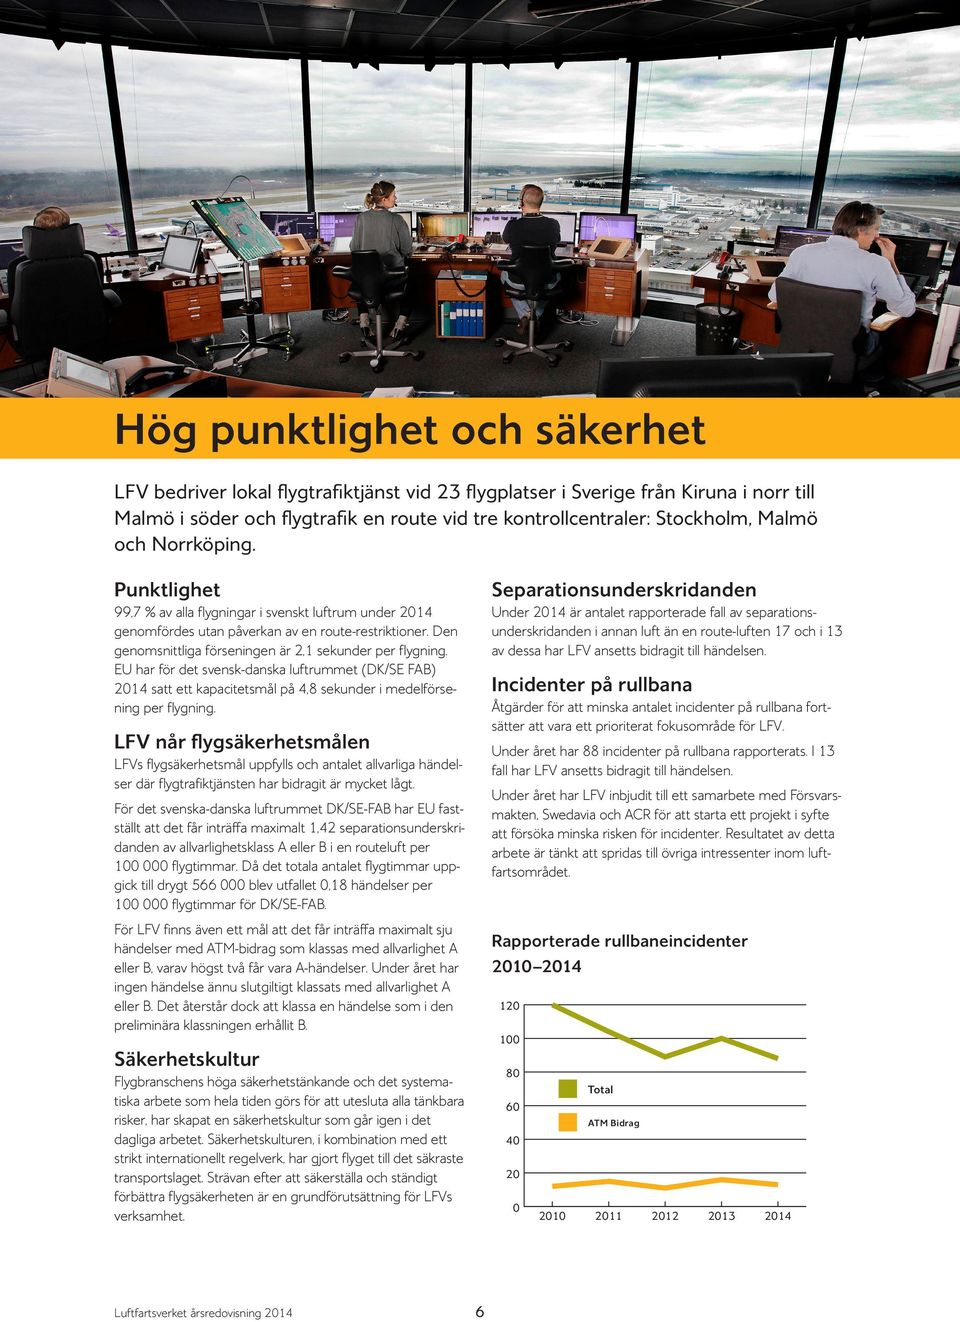 EU har för det svensk-danska luftrummet (DK/SE FAB) 2014 satt ett kapacitetsmål på 4,8 sekunder i medelförsening per flygning.